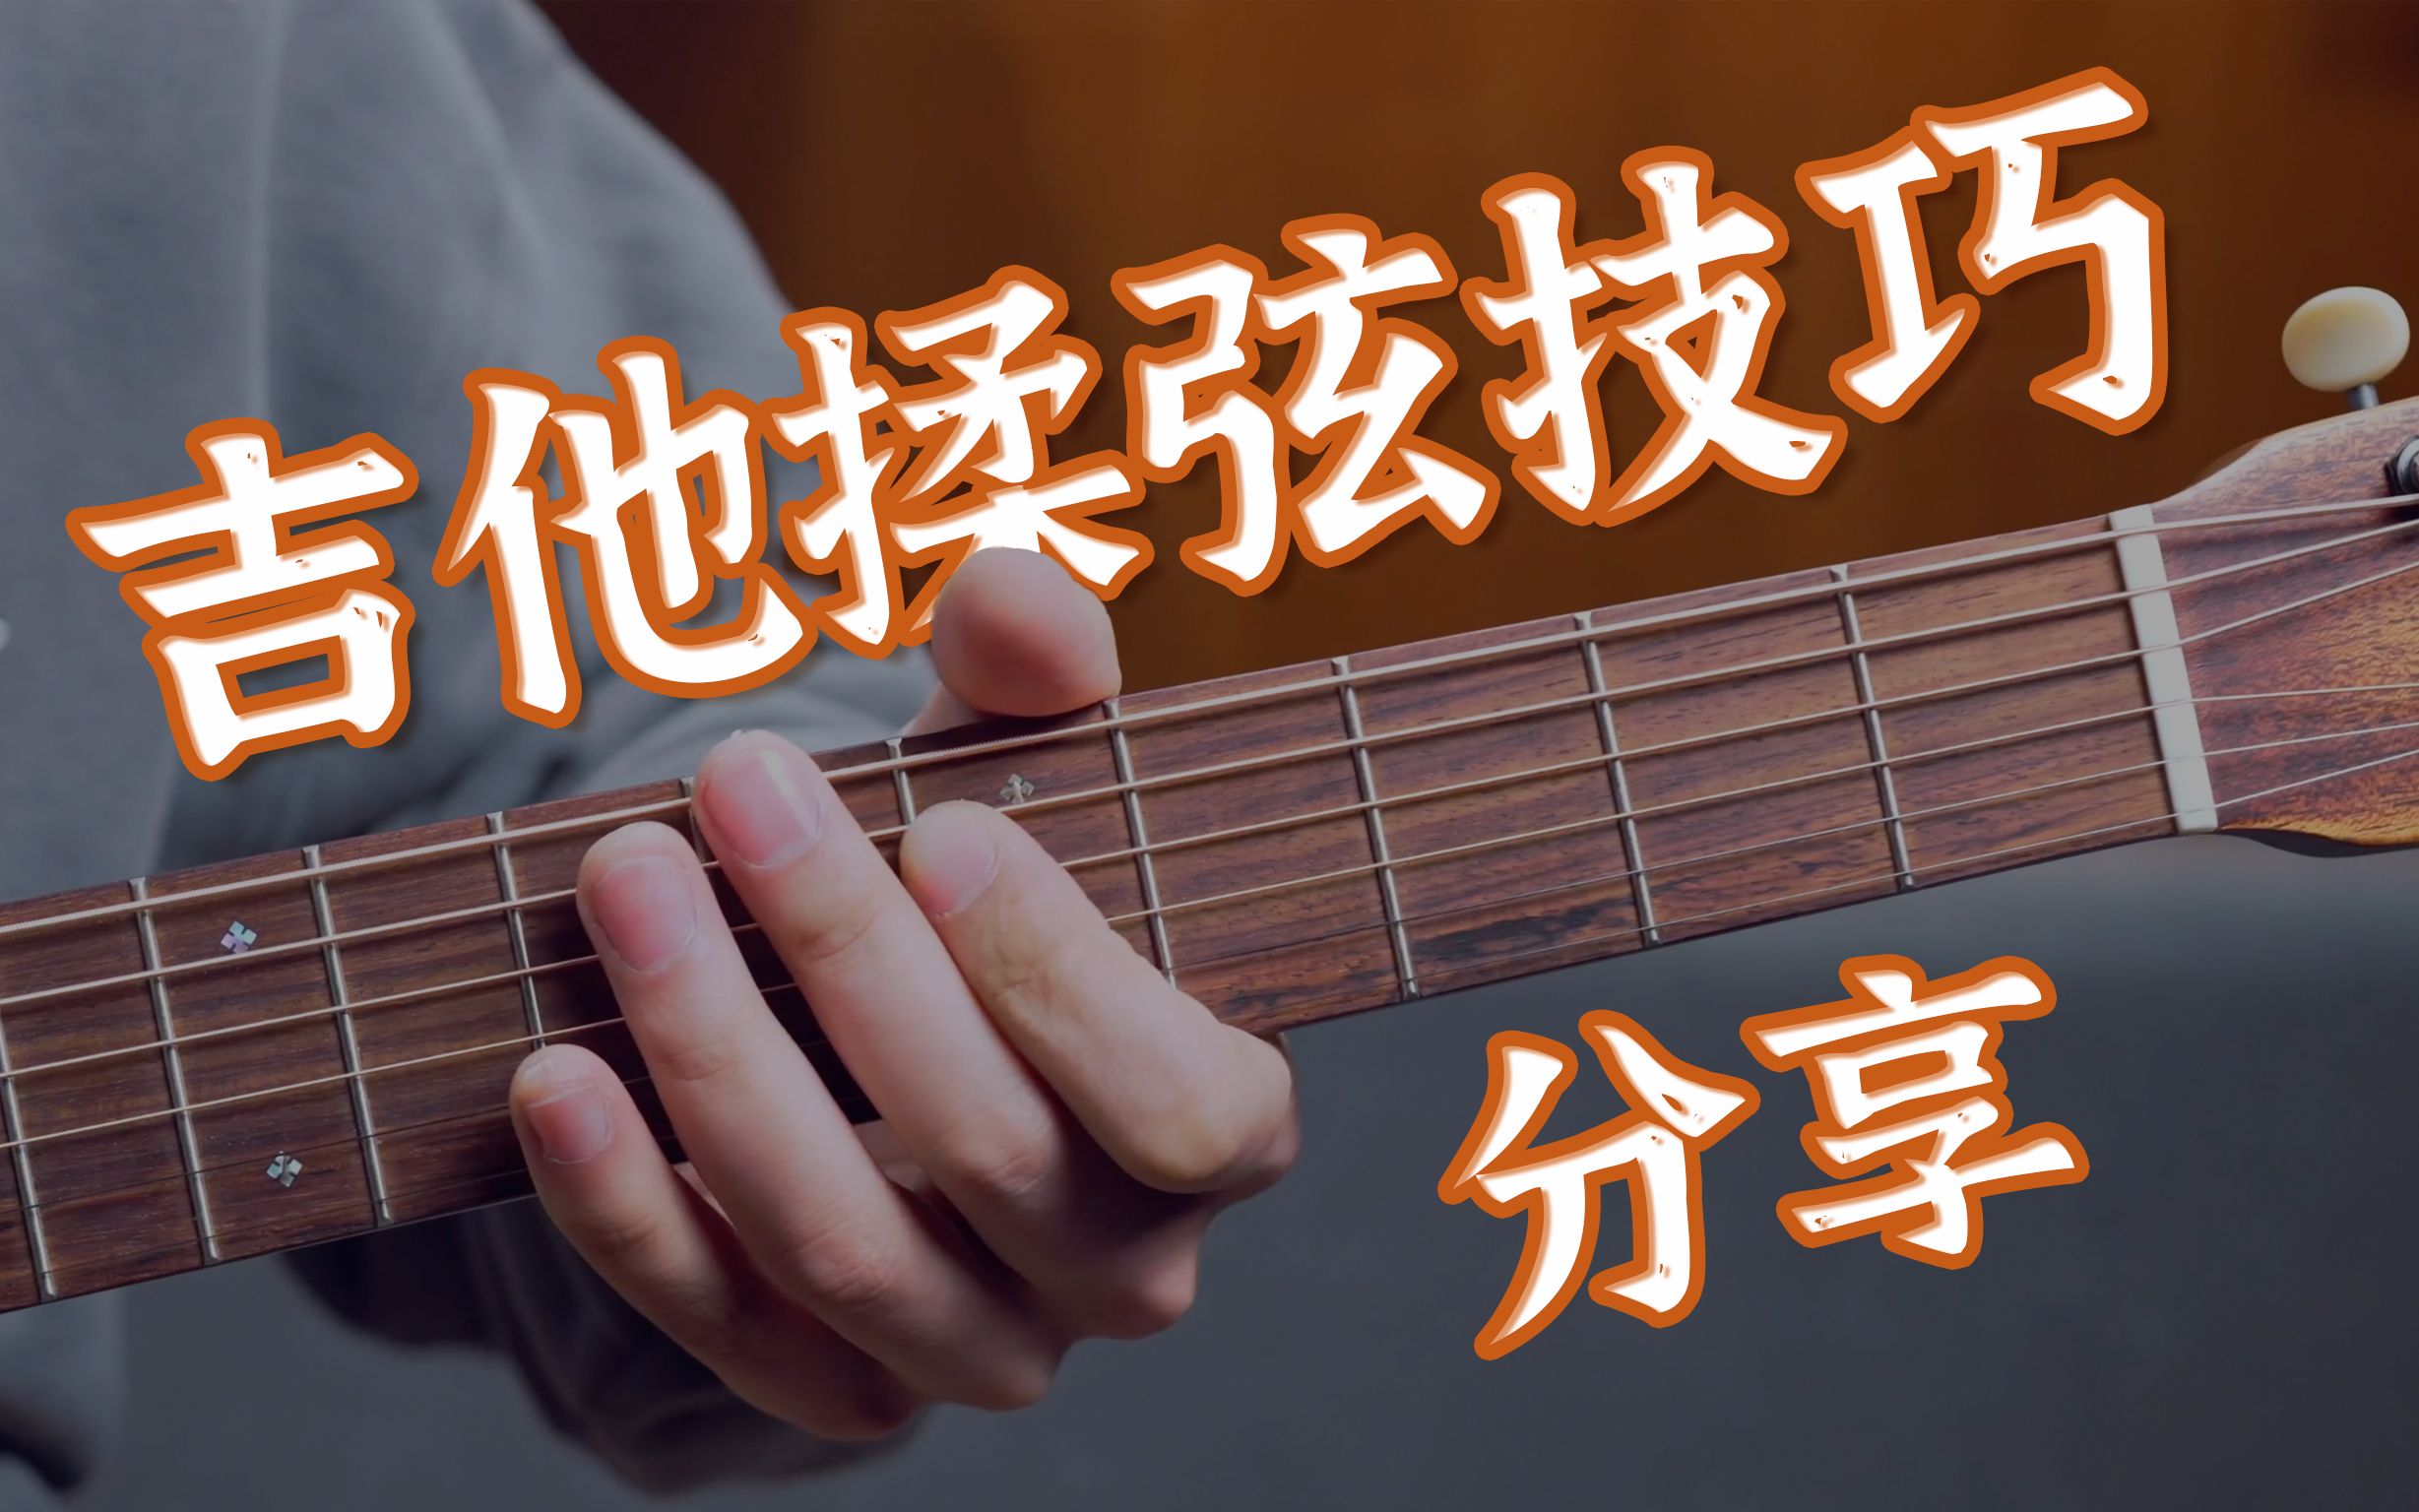 民谣吉他揉弦技巧一个视频教会你【无废话讲解】